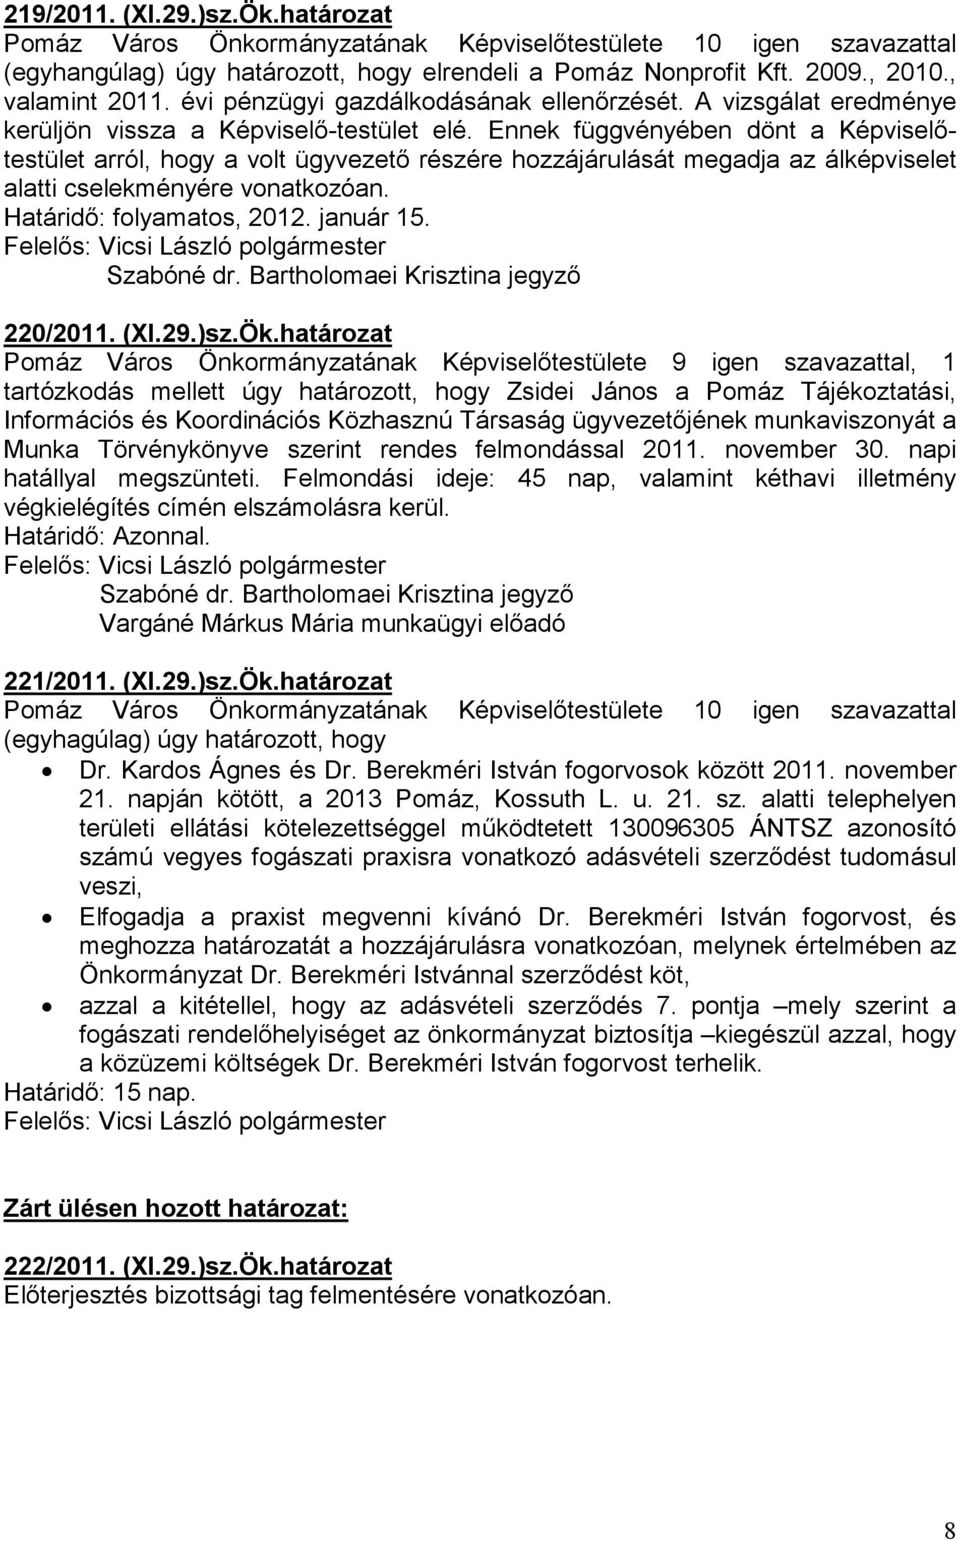 Ennek függvényében dönt a Képviselıtestület arról, hogy a volt ügyvezetı részére hozzájárulását megadja az álképviselet alatti cselekményére vonatkozóan. Határidı: folyamatos, 2012. január 15.